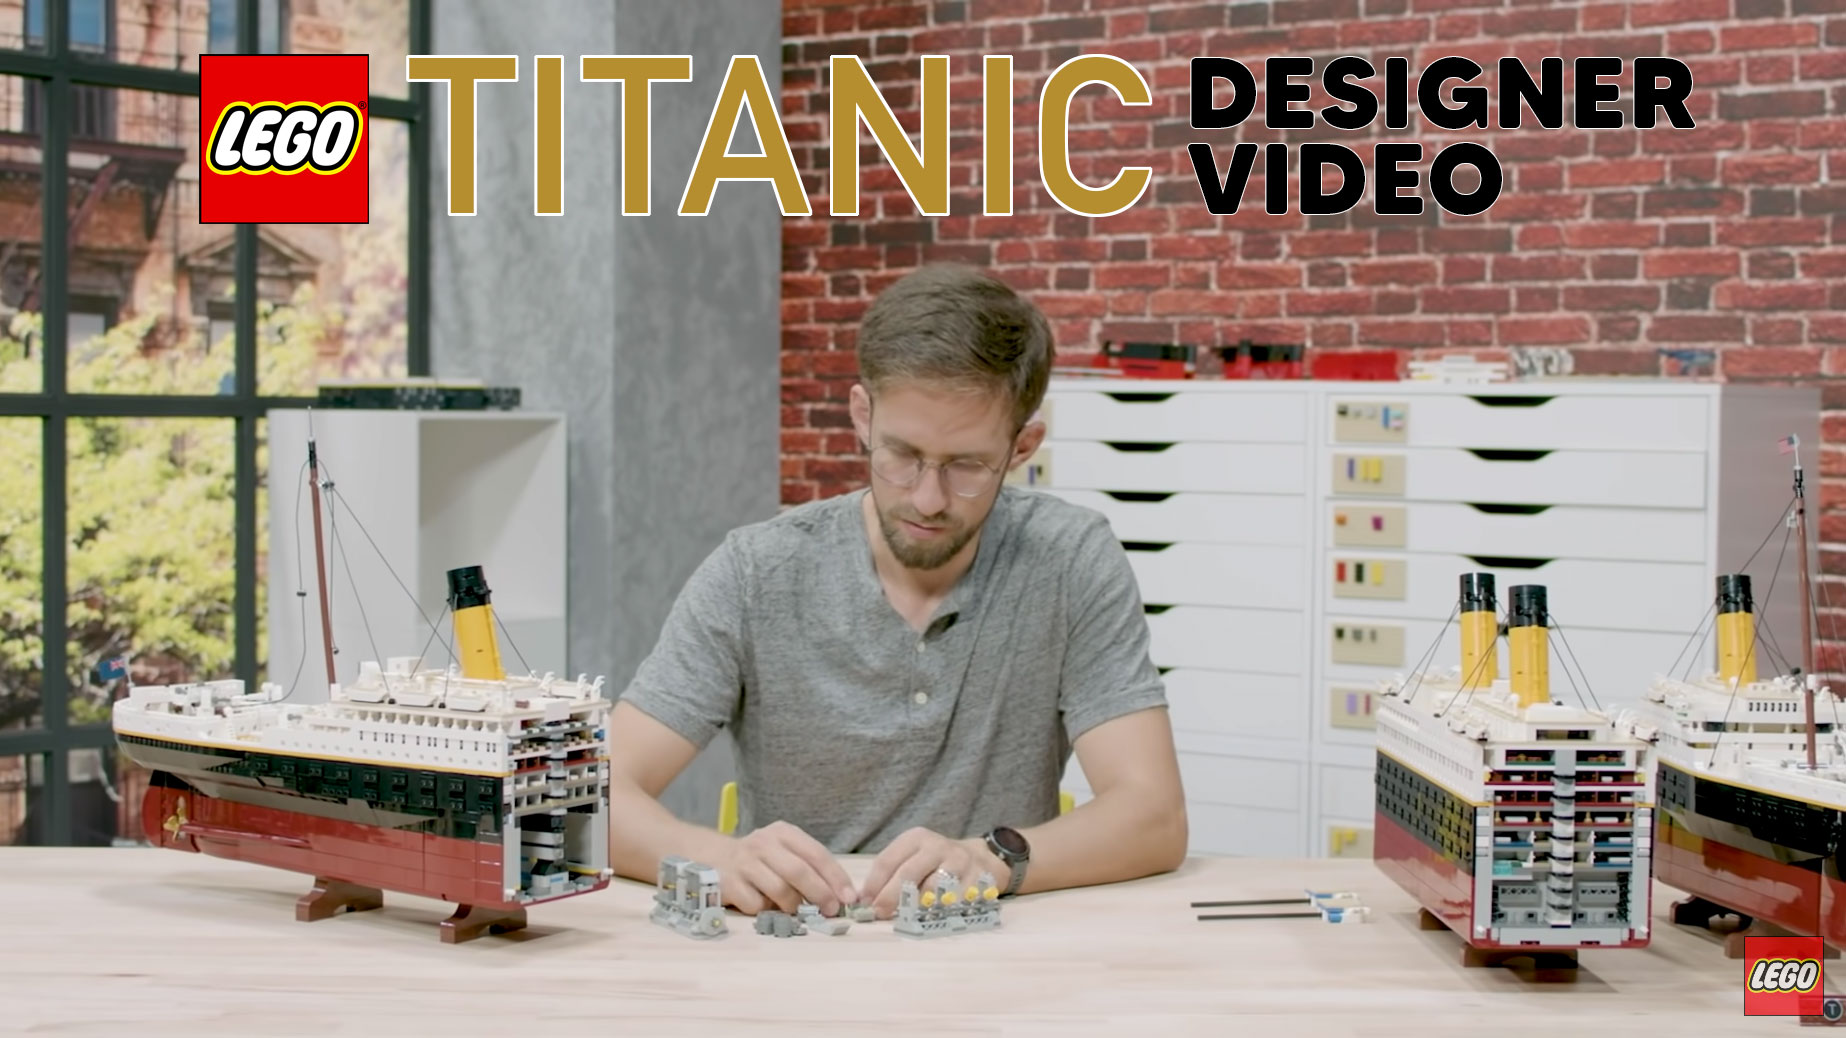 Brickfinder - LEGO Designer Video Is